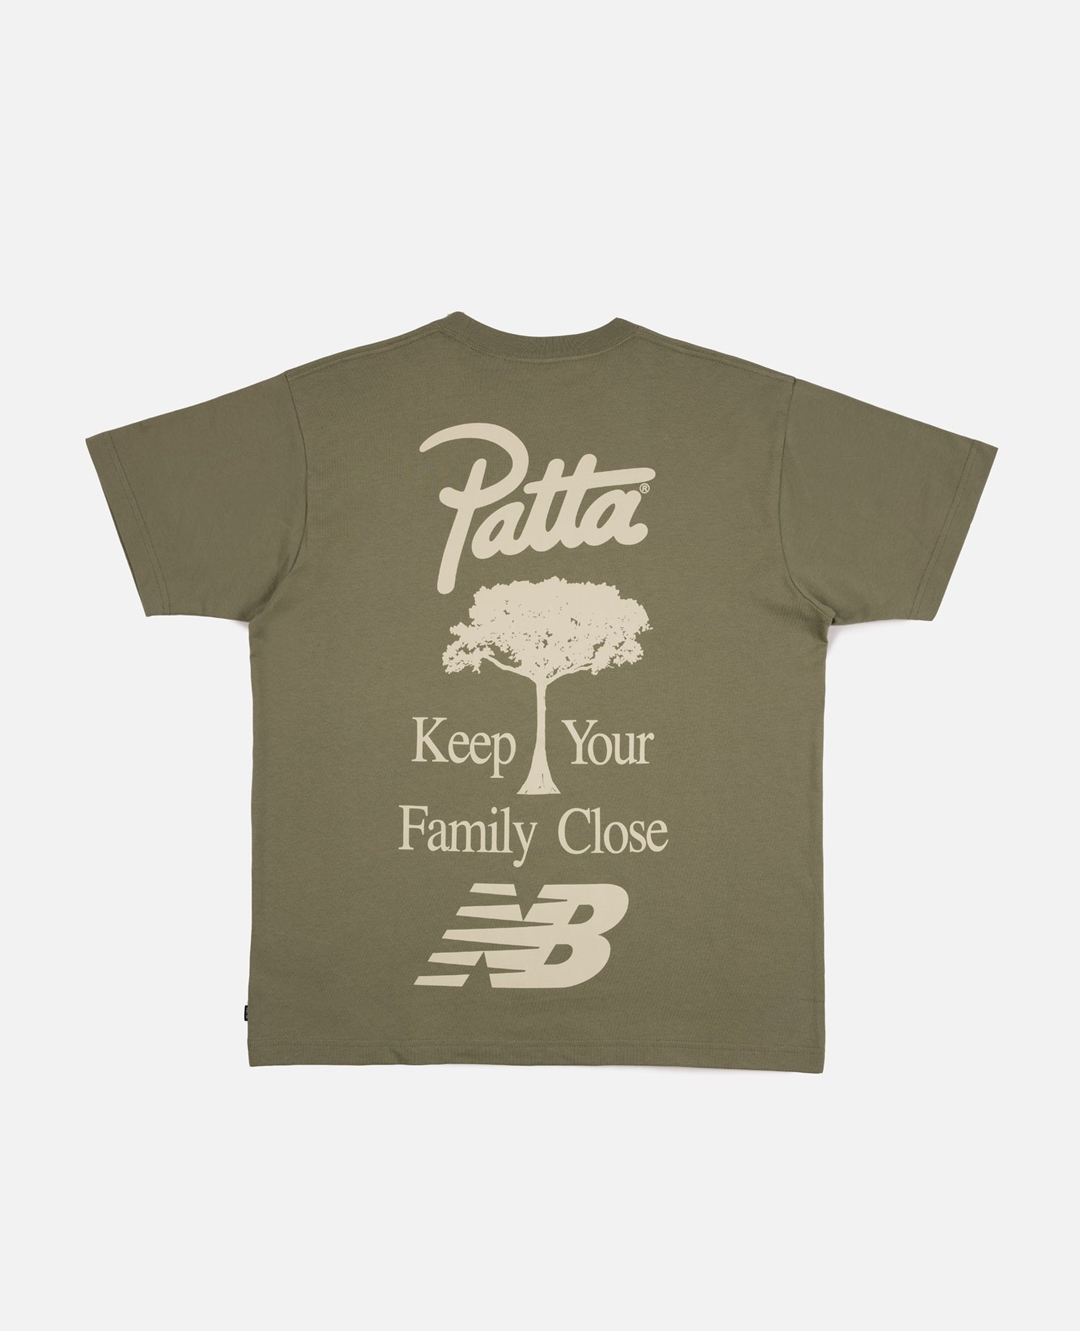 【国内 10/7 発売】Patta x New Balance M990v3 PP3 (パタ ニューバランス)